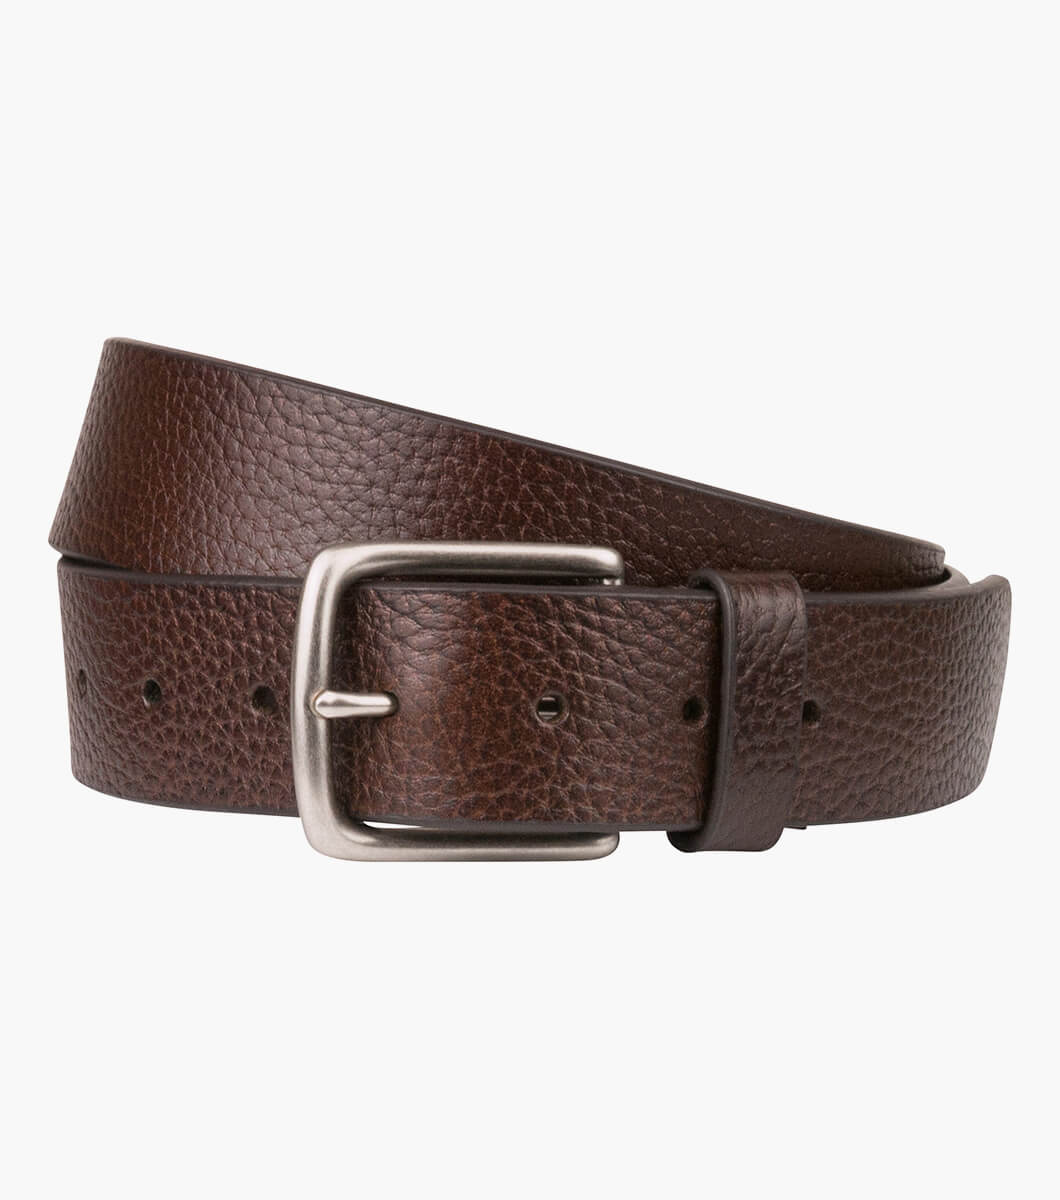 Ford Casual Leather Belt Men’s Belts | Florsheim.com